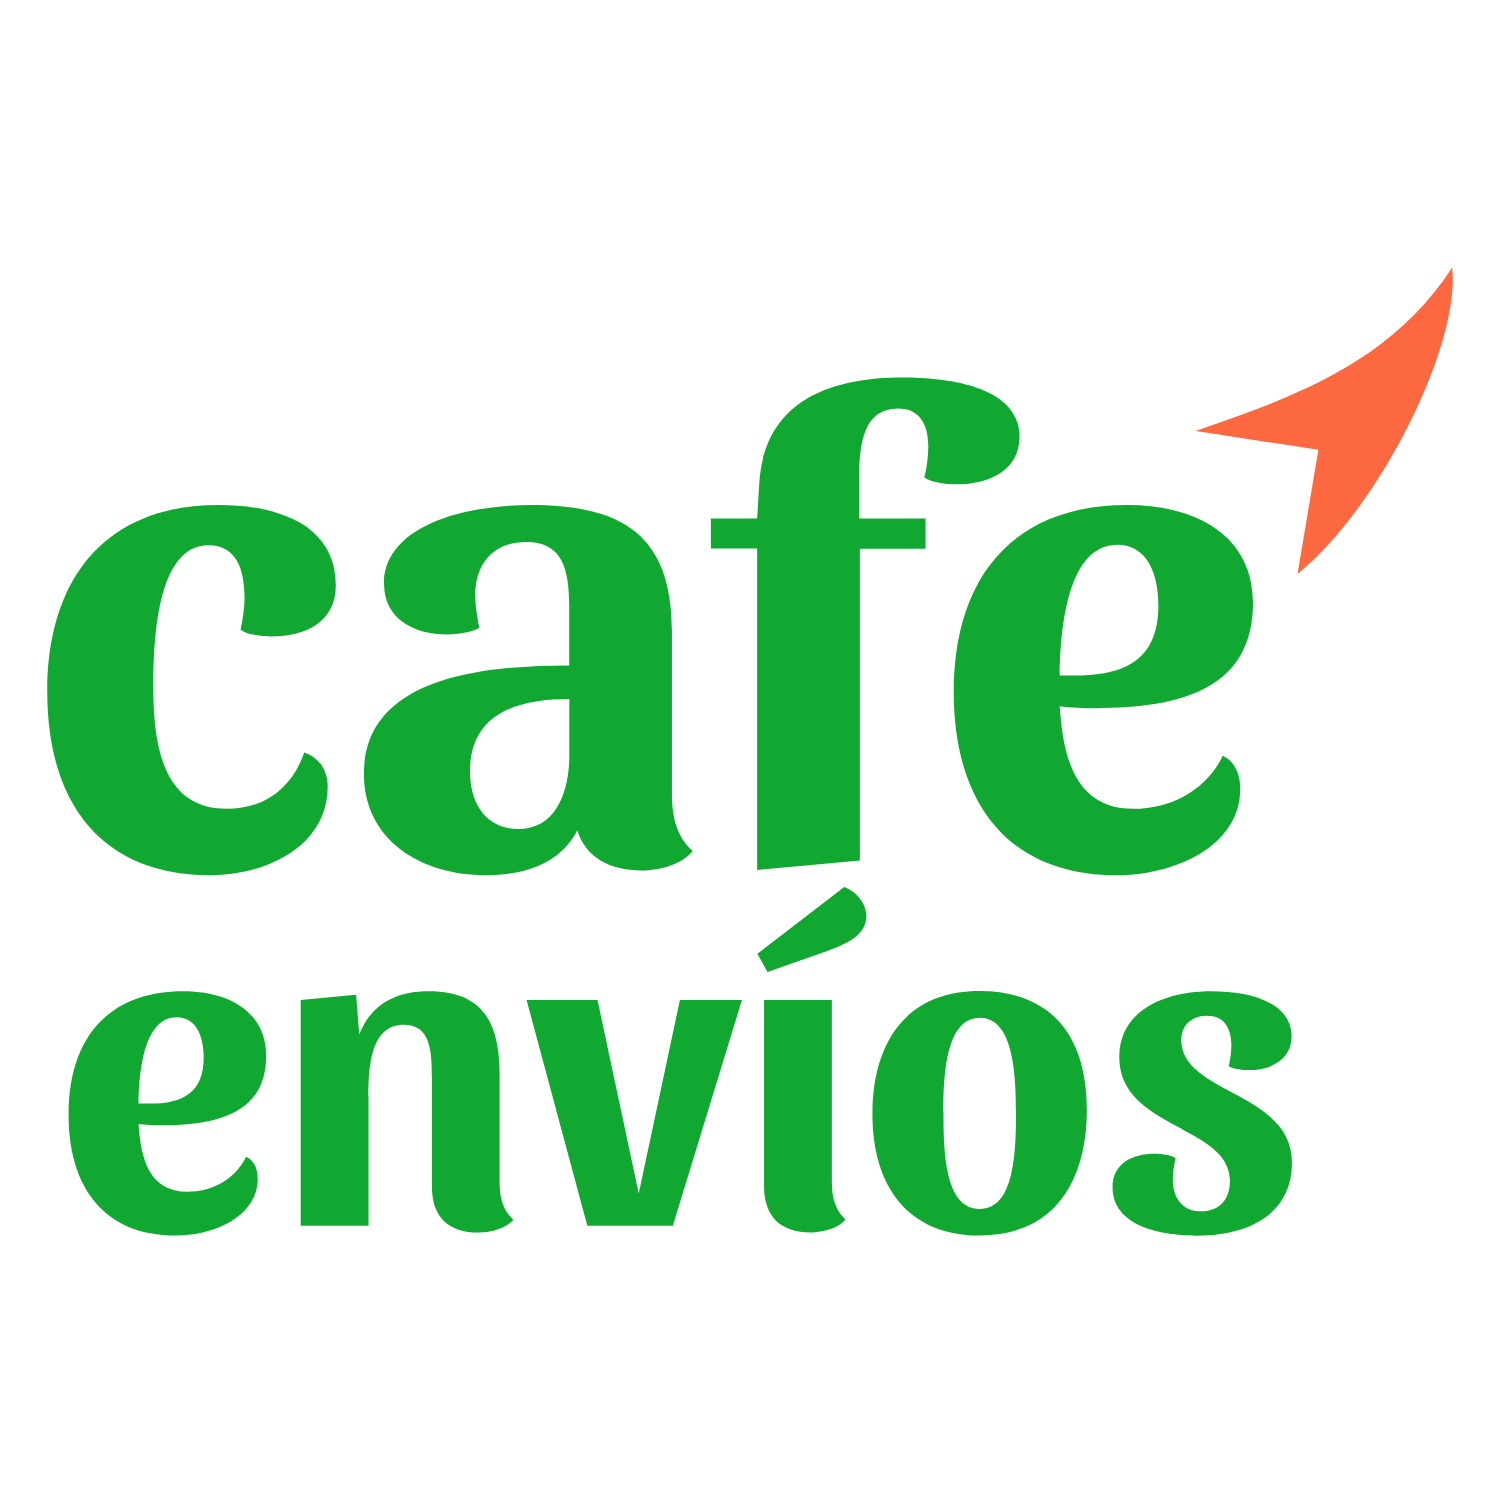 Cafe Envios